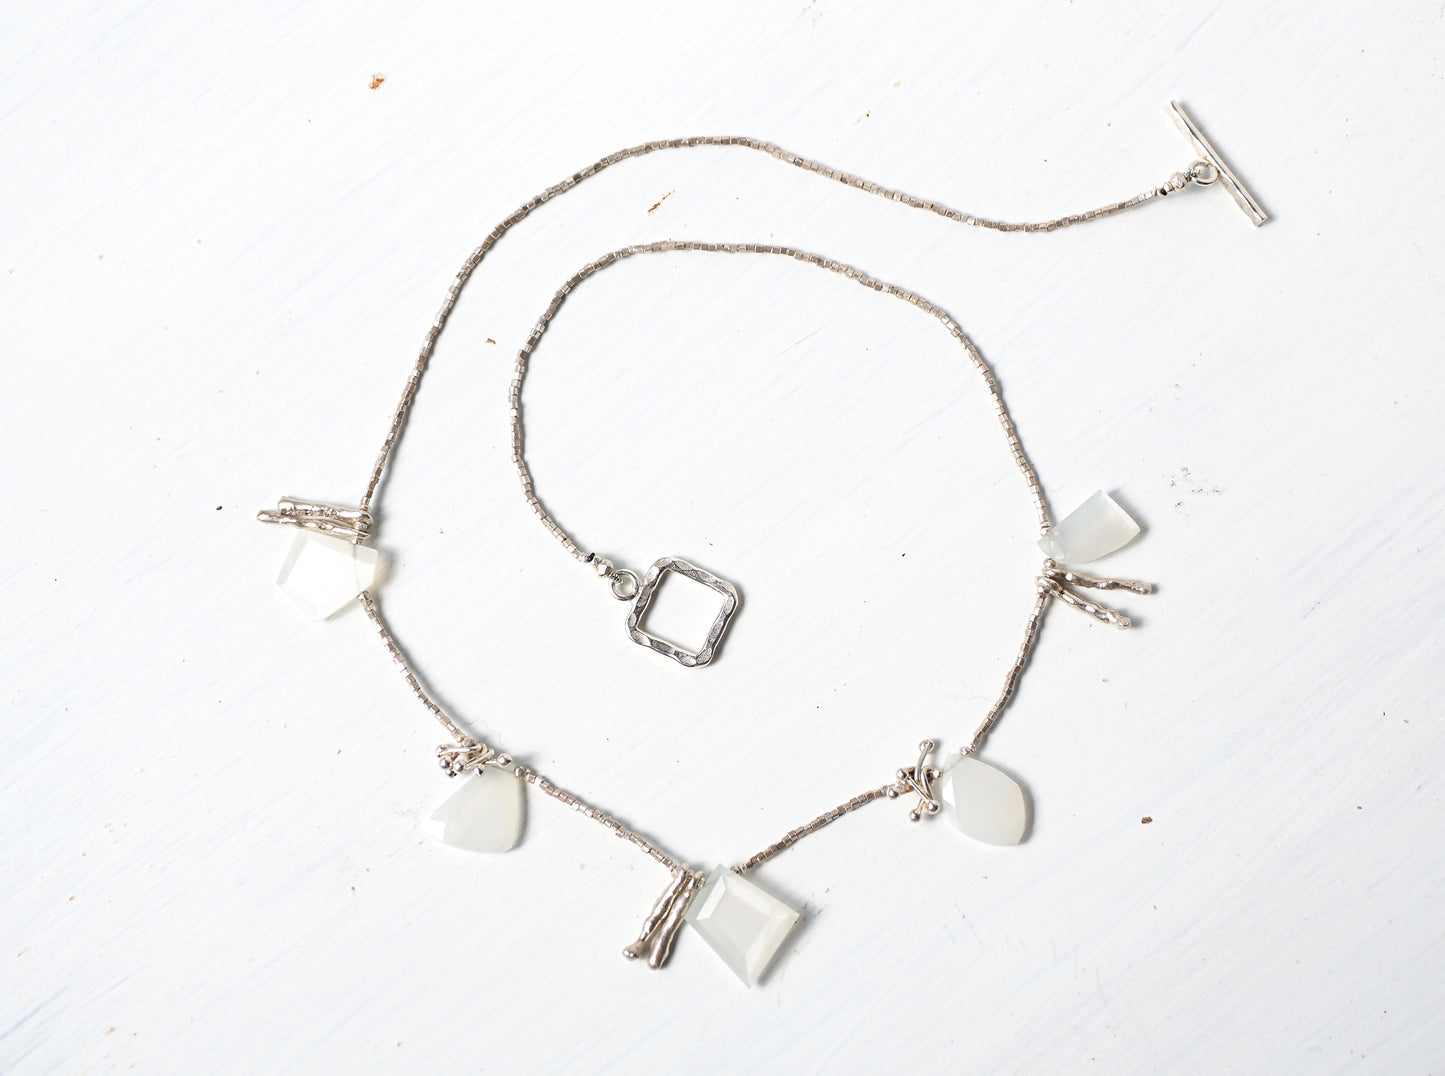 Moonstone Silver Bib Necklace